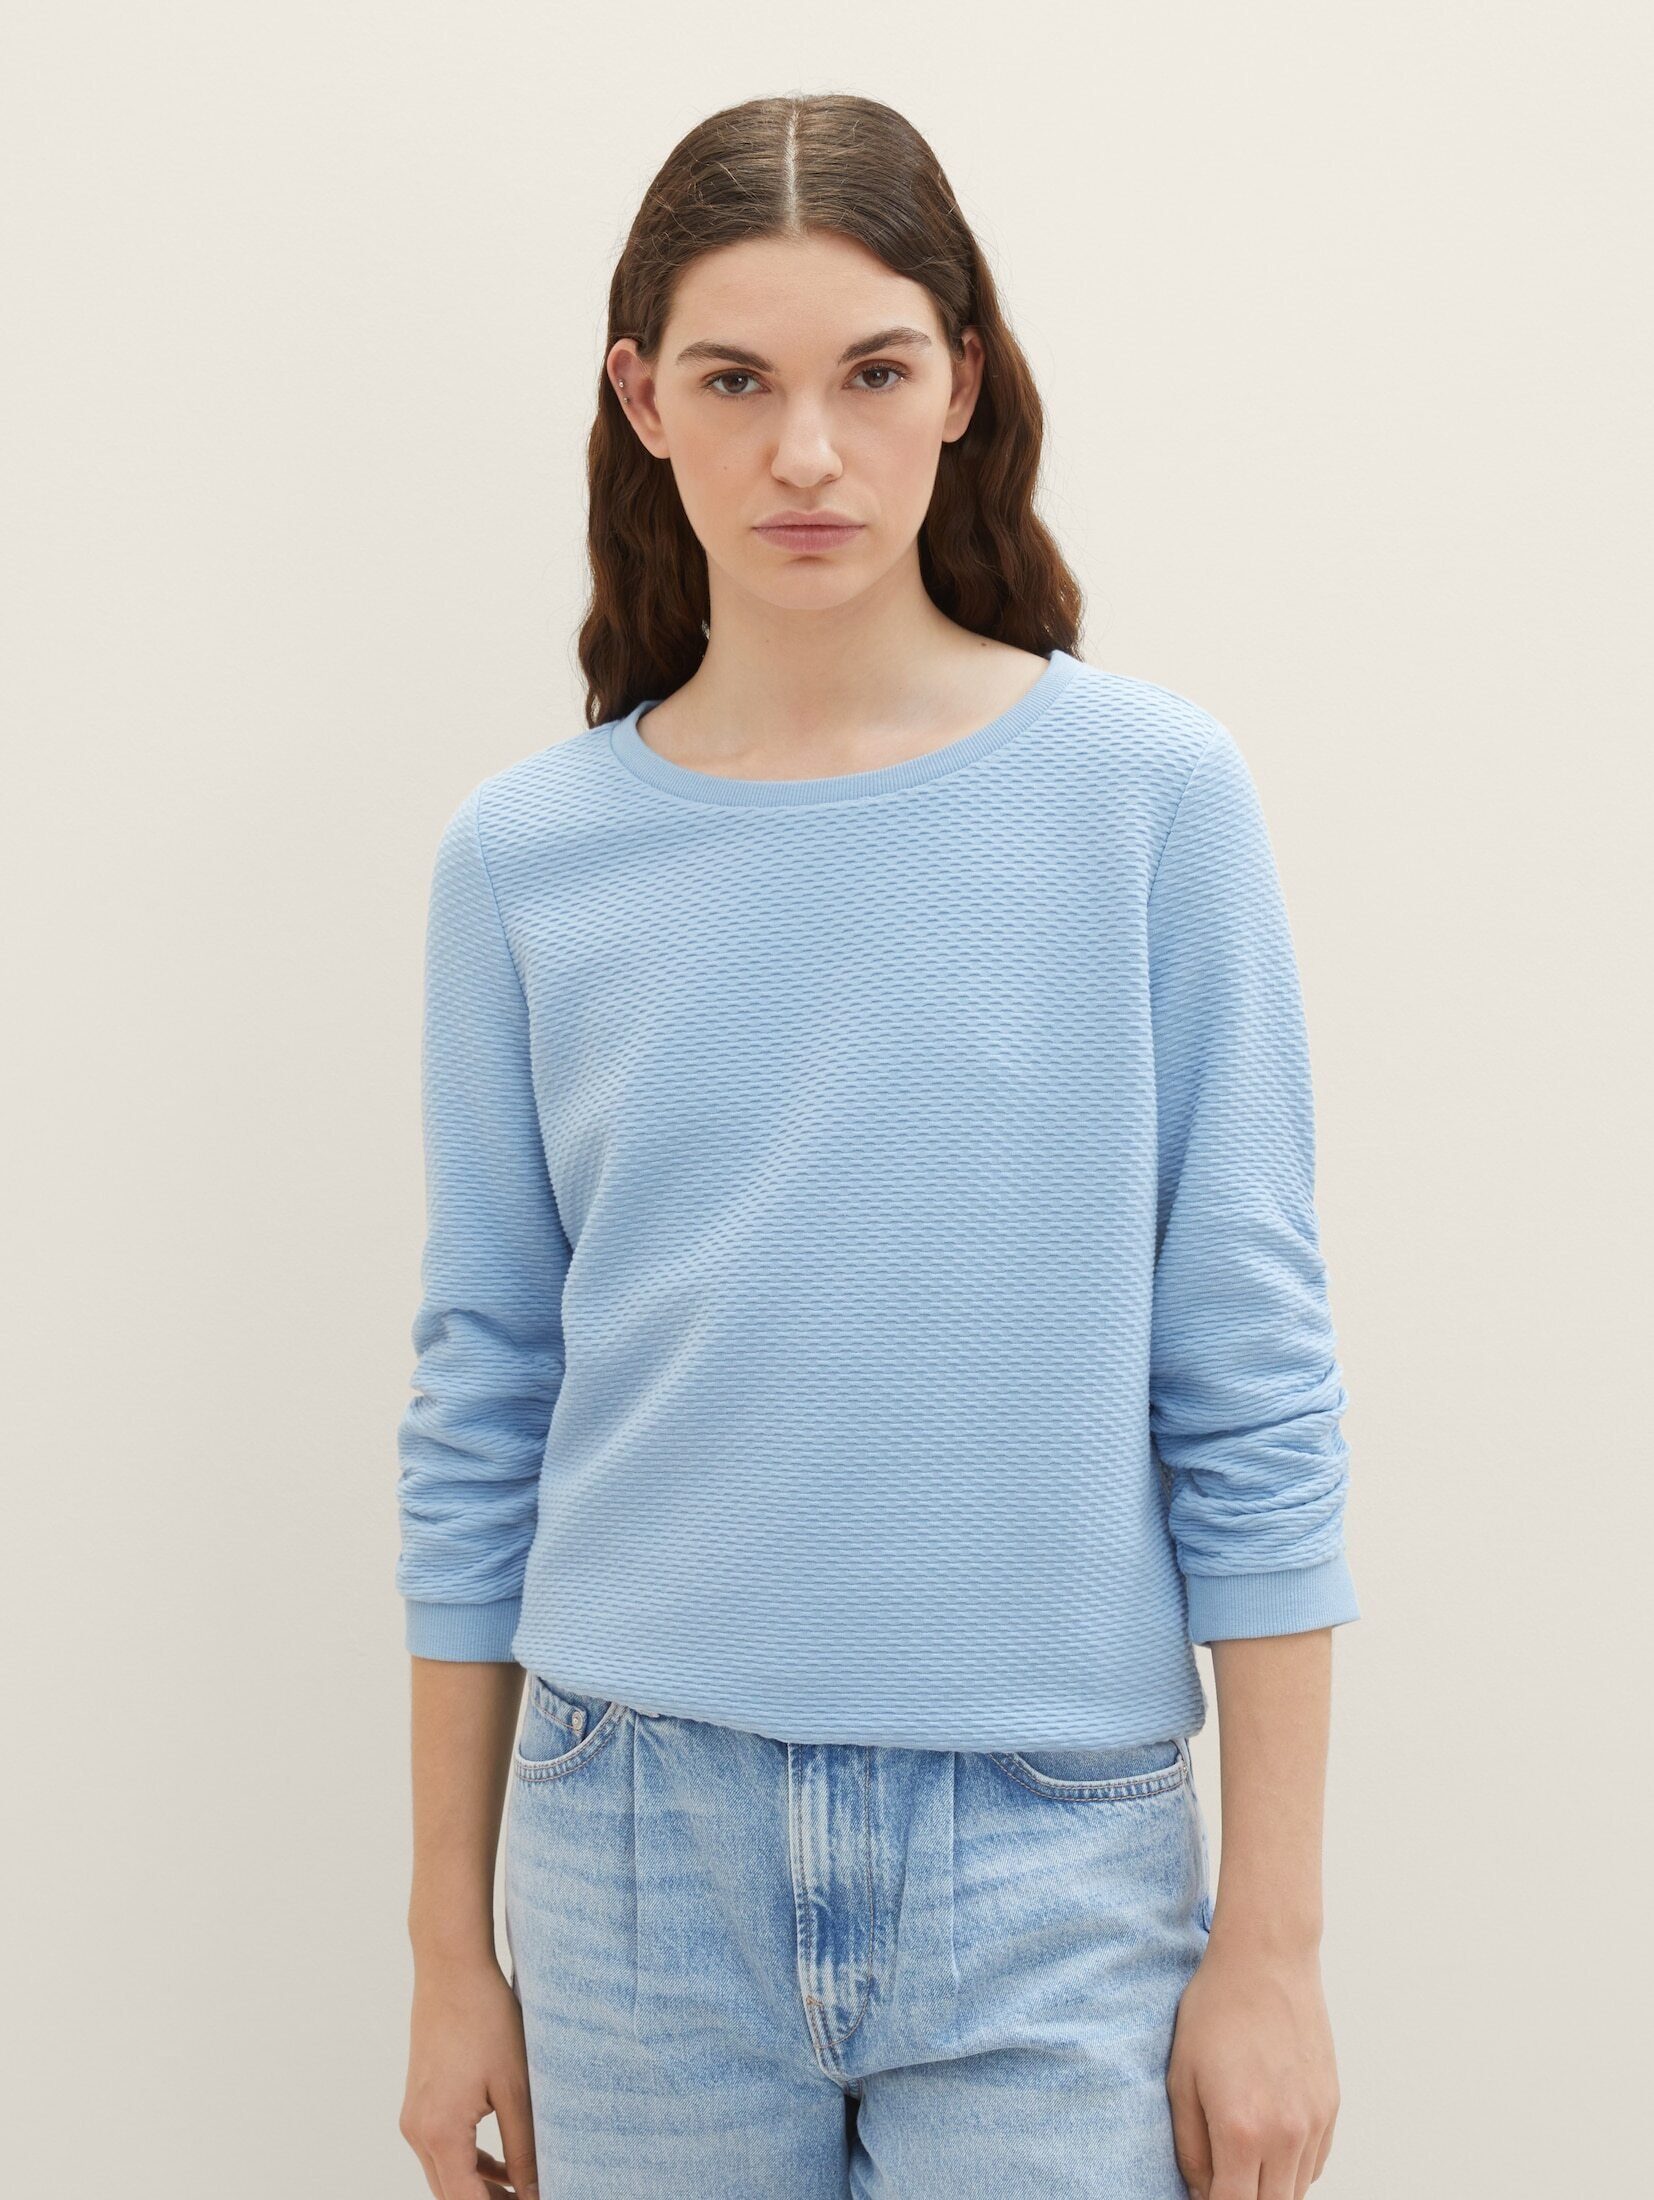 TOM TAILOR Denim Sweatshirt Sweatshirt Strukturiertes Charming Blue Soft